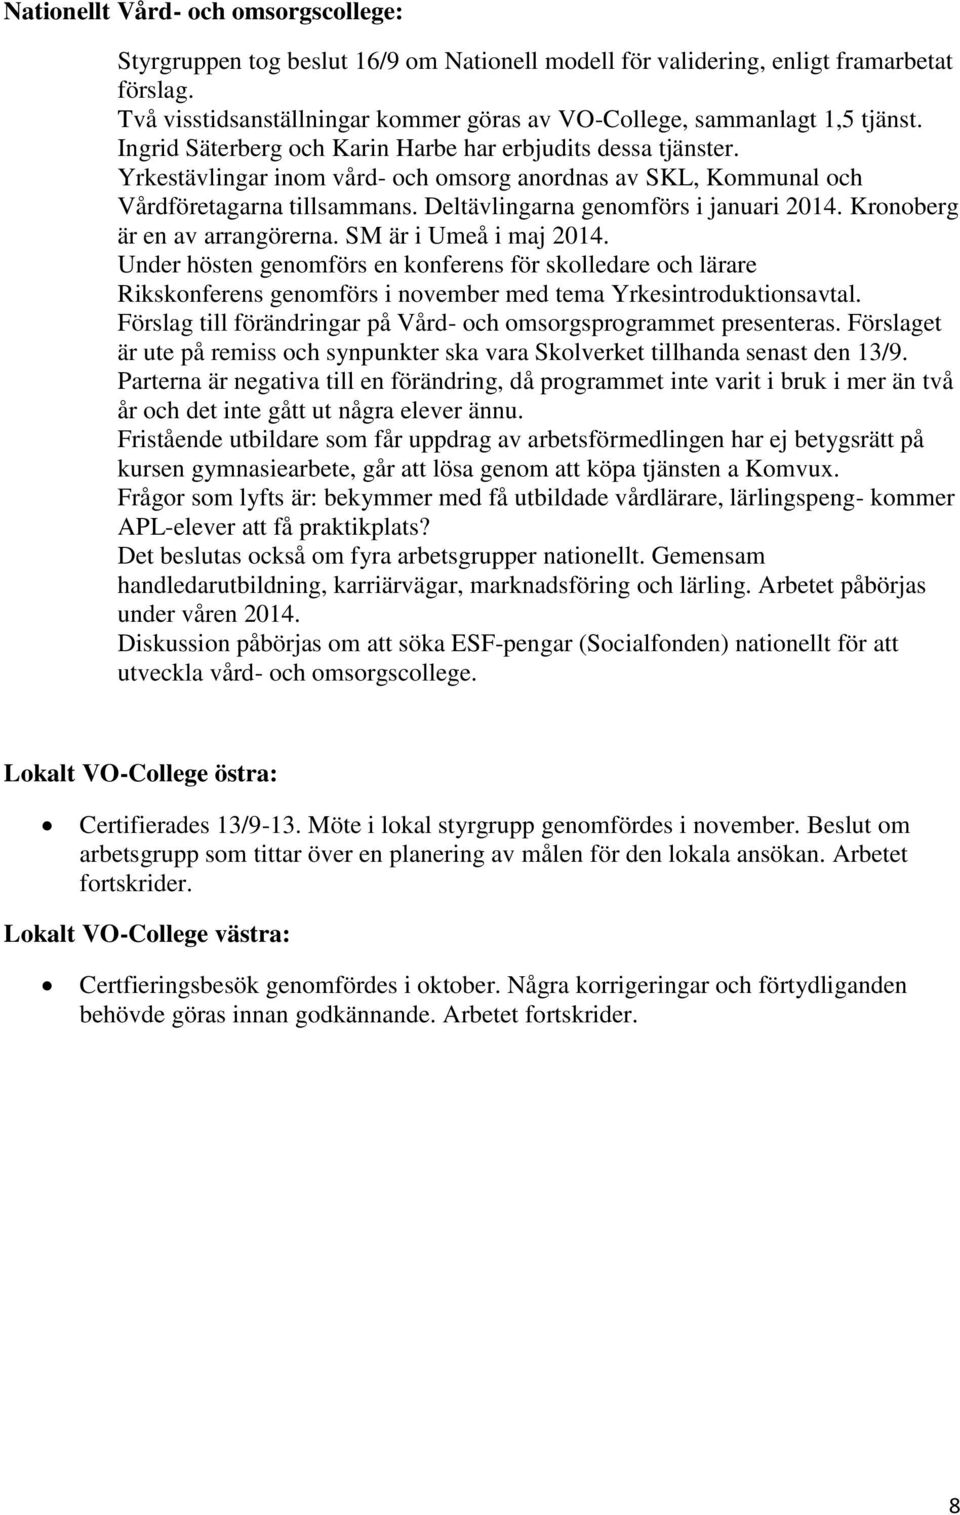 Yrkestävlingar inom vård- och omsorg anordnas av SKL, Kommunal och Vårdföretagarna tillsammans. Deltävlingarna genomförs i januari 2014. Kronoberg är en av arrangörerna. SM är i Umeå i maj 2014.